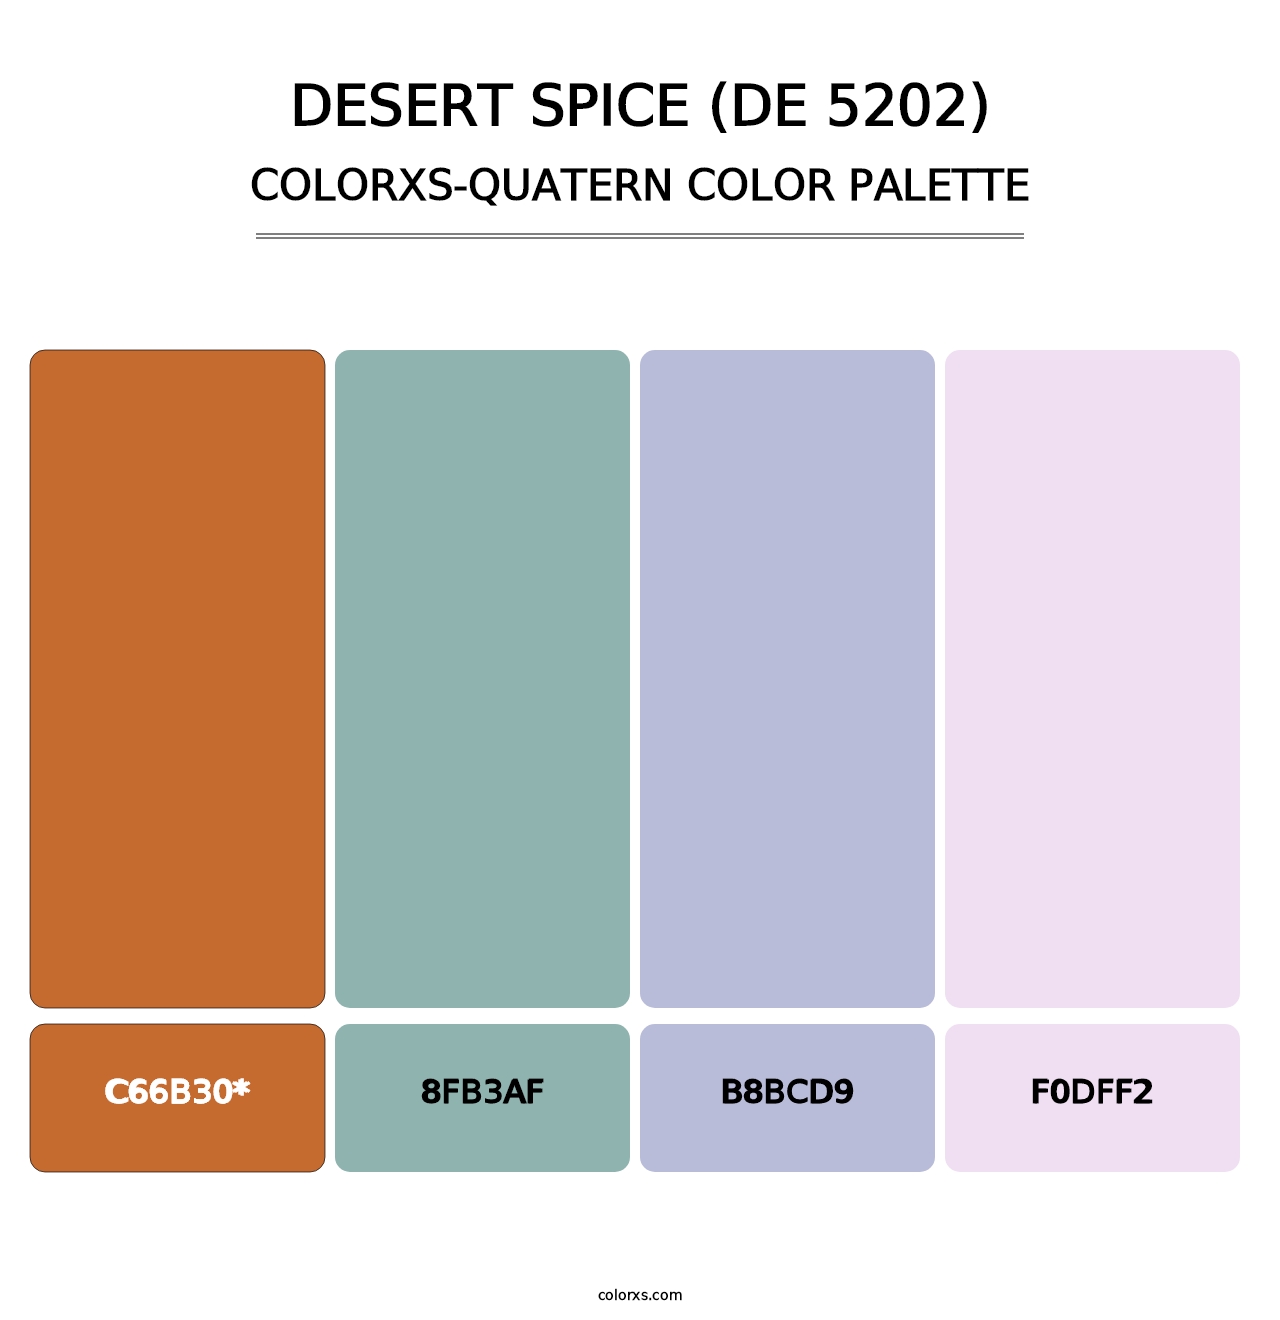 Desert Spice (DE 5202) - Colorxs Quatern Palette